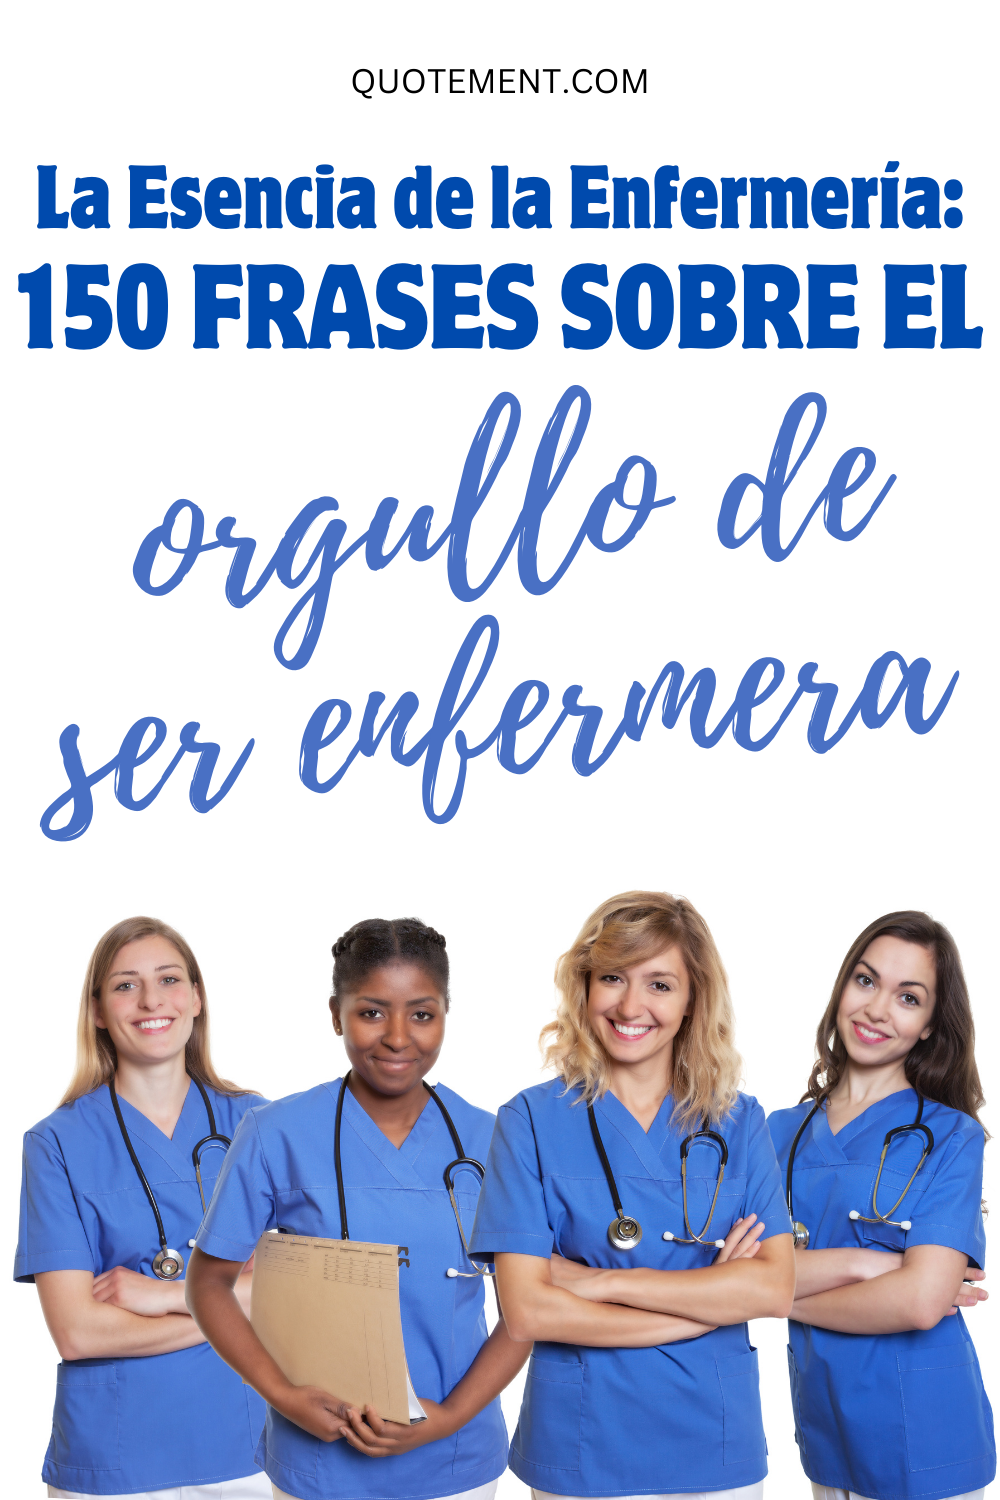 La esencia de la enfermería 150 frases sobre el orgullo de ser enfermero